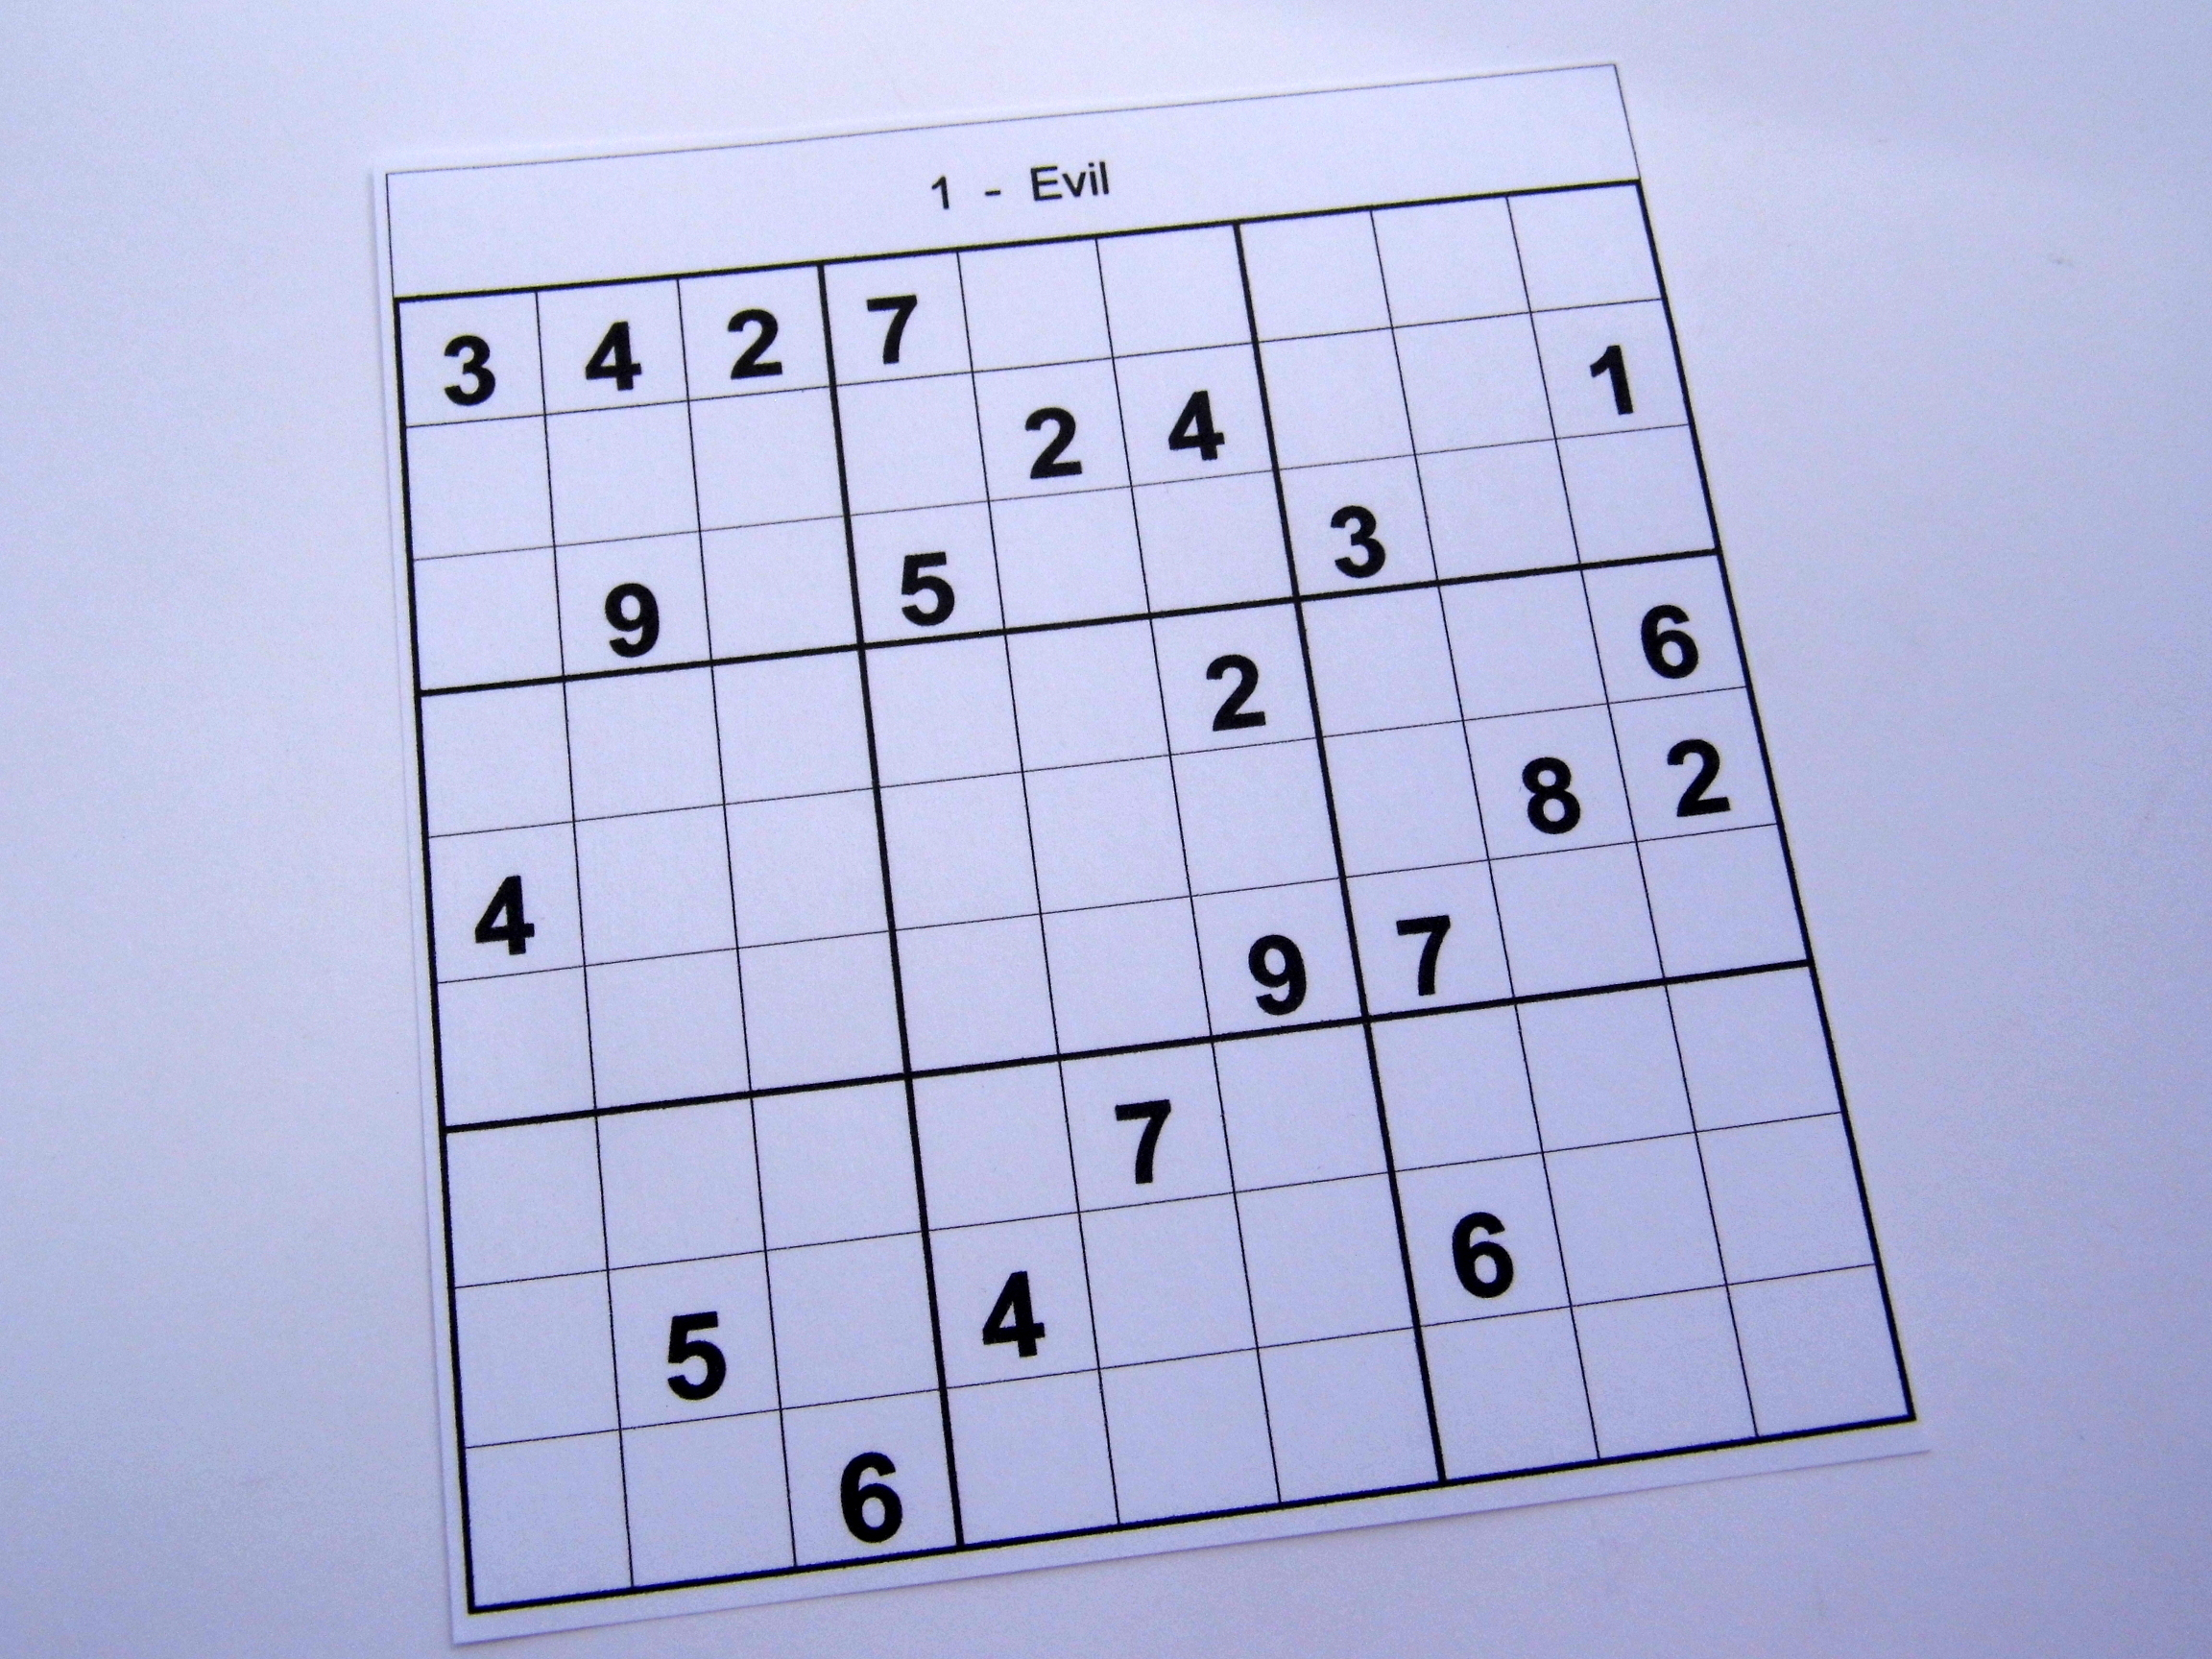 Advanced Sudoku Printable